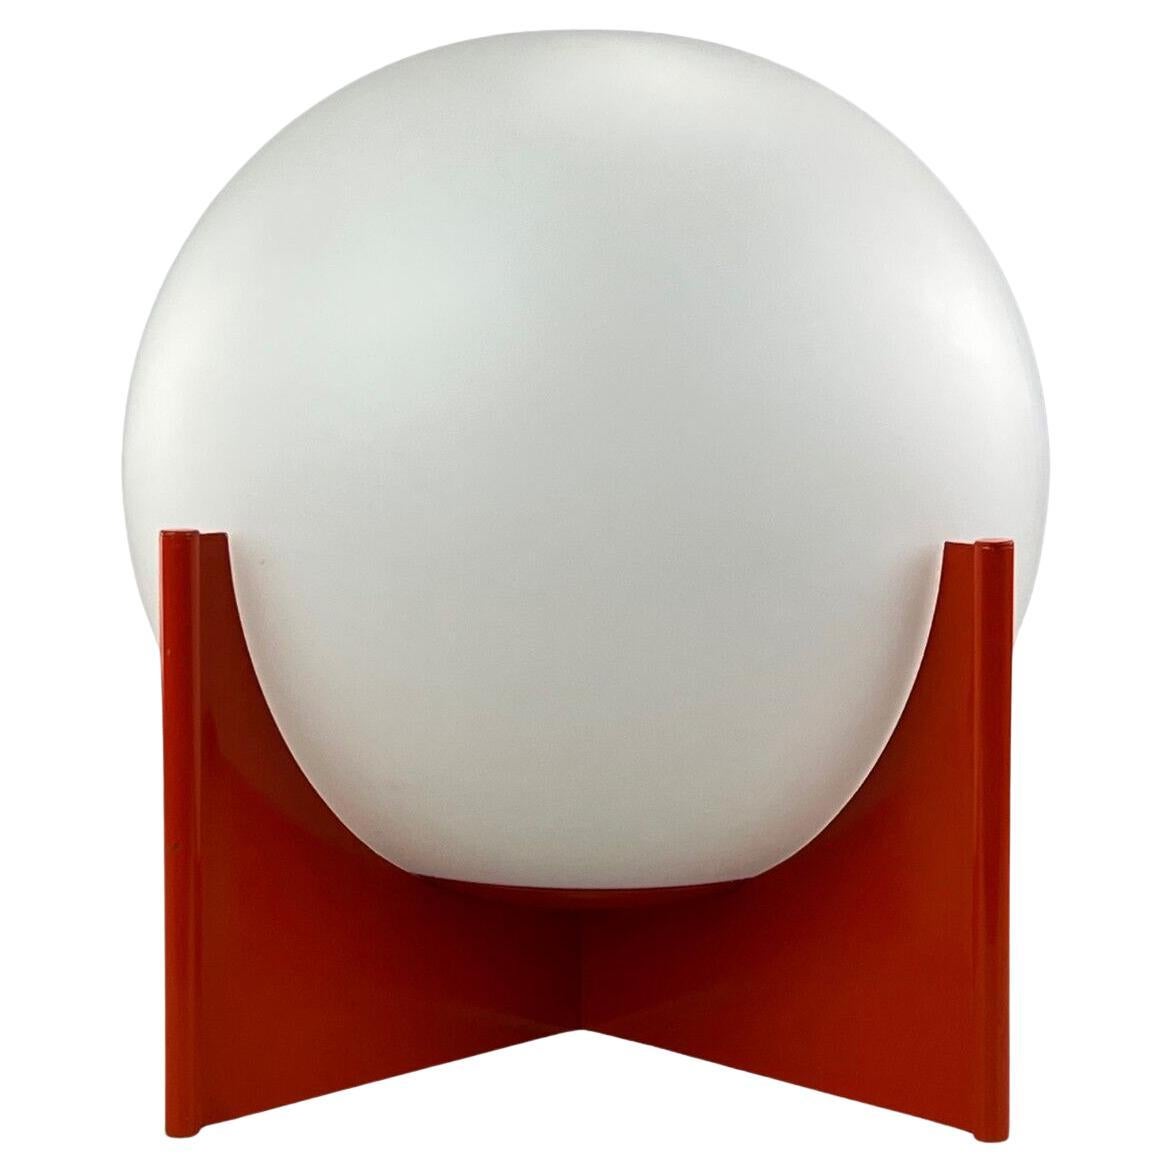 Kugel-Lampe-Tischlampe/Lampe, Space Age Design, Glas und Metall, 60er-Jahre